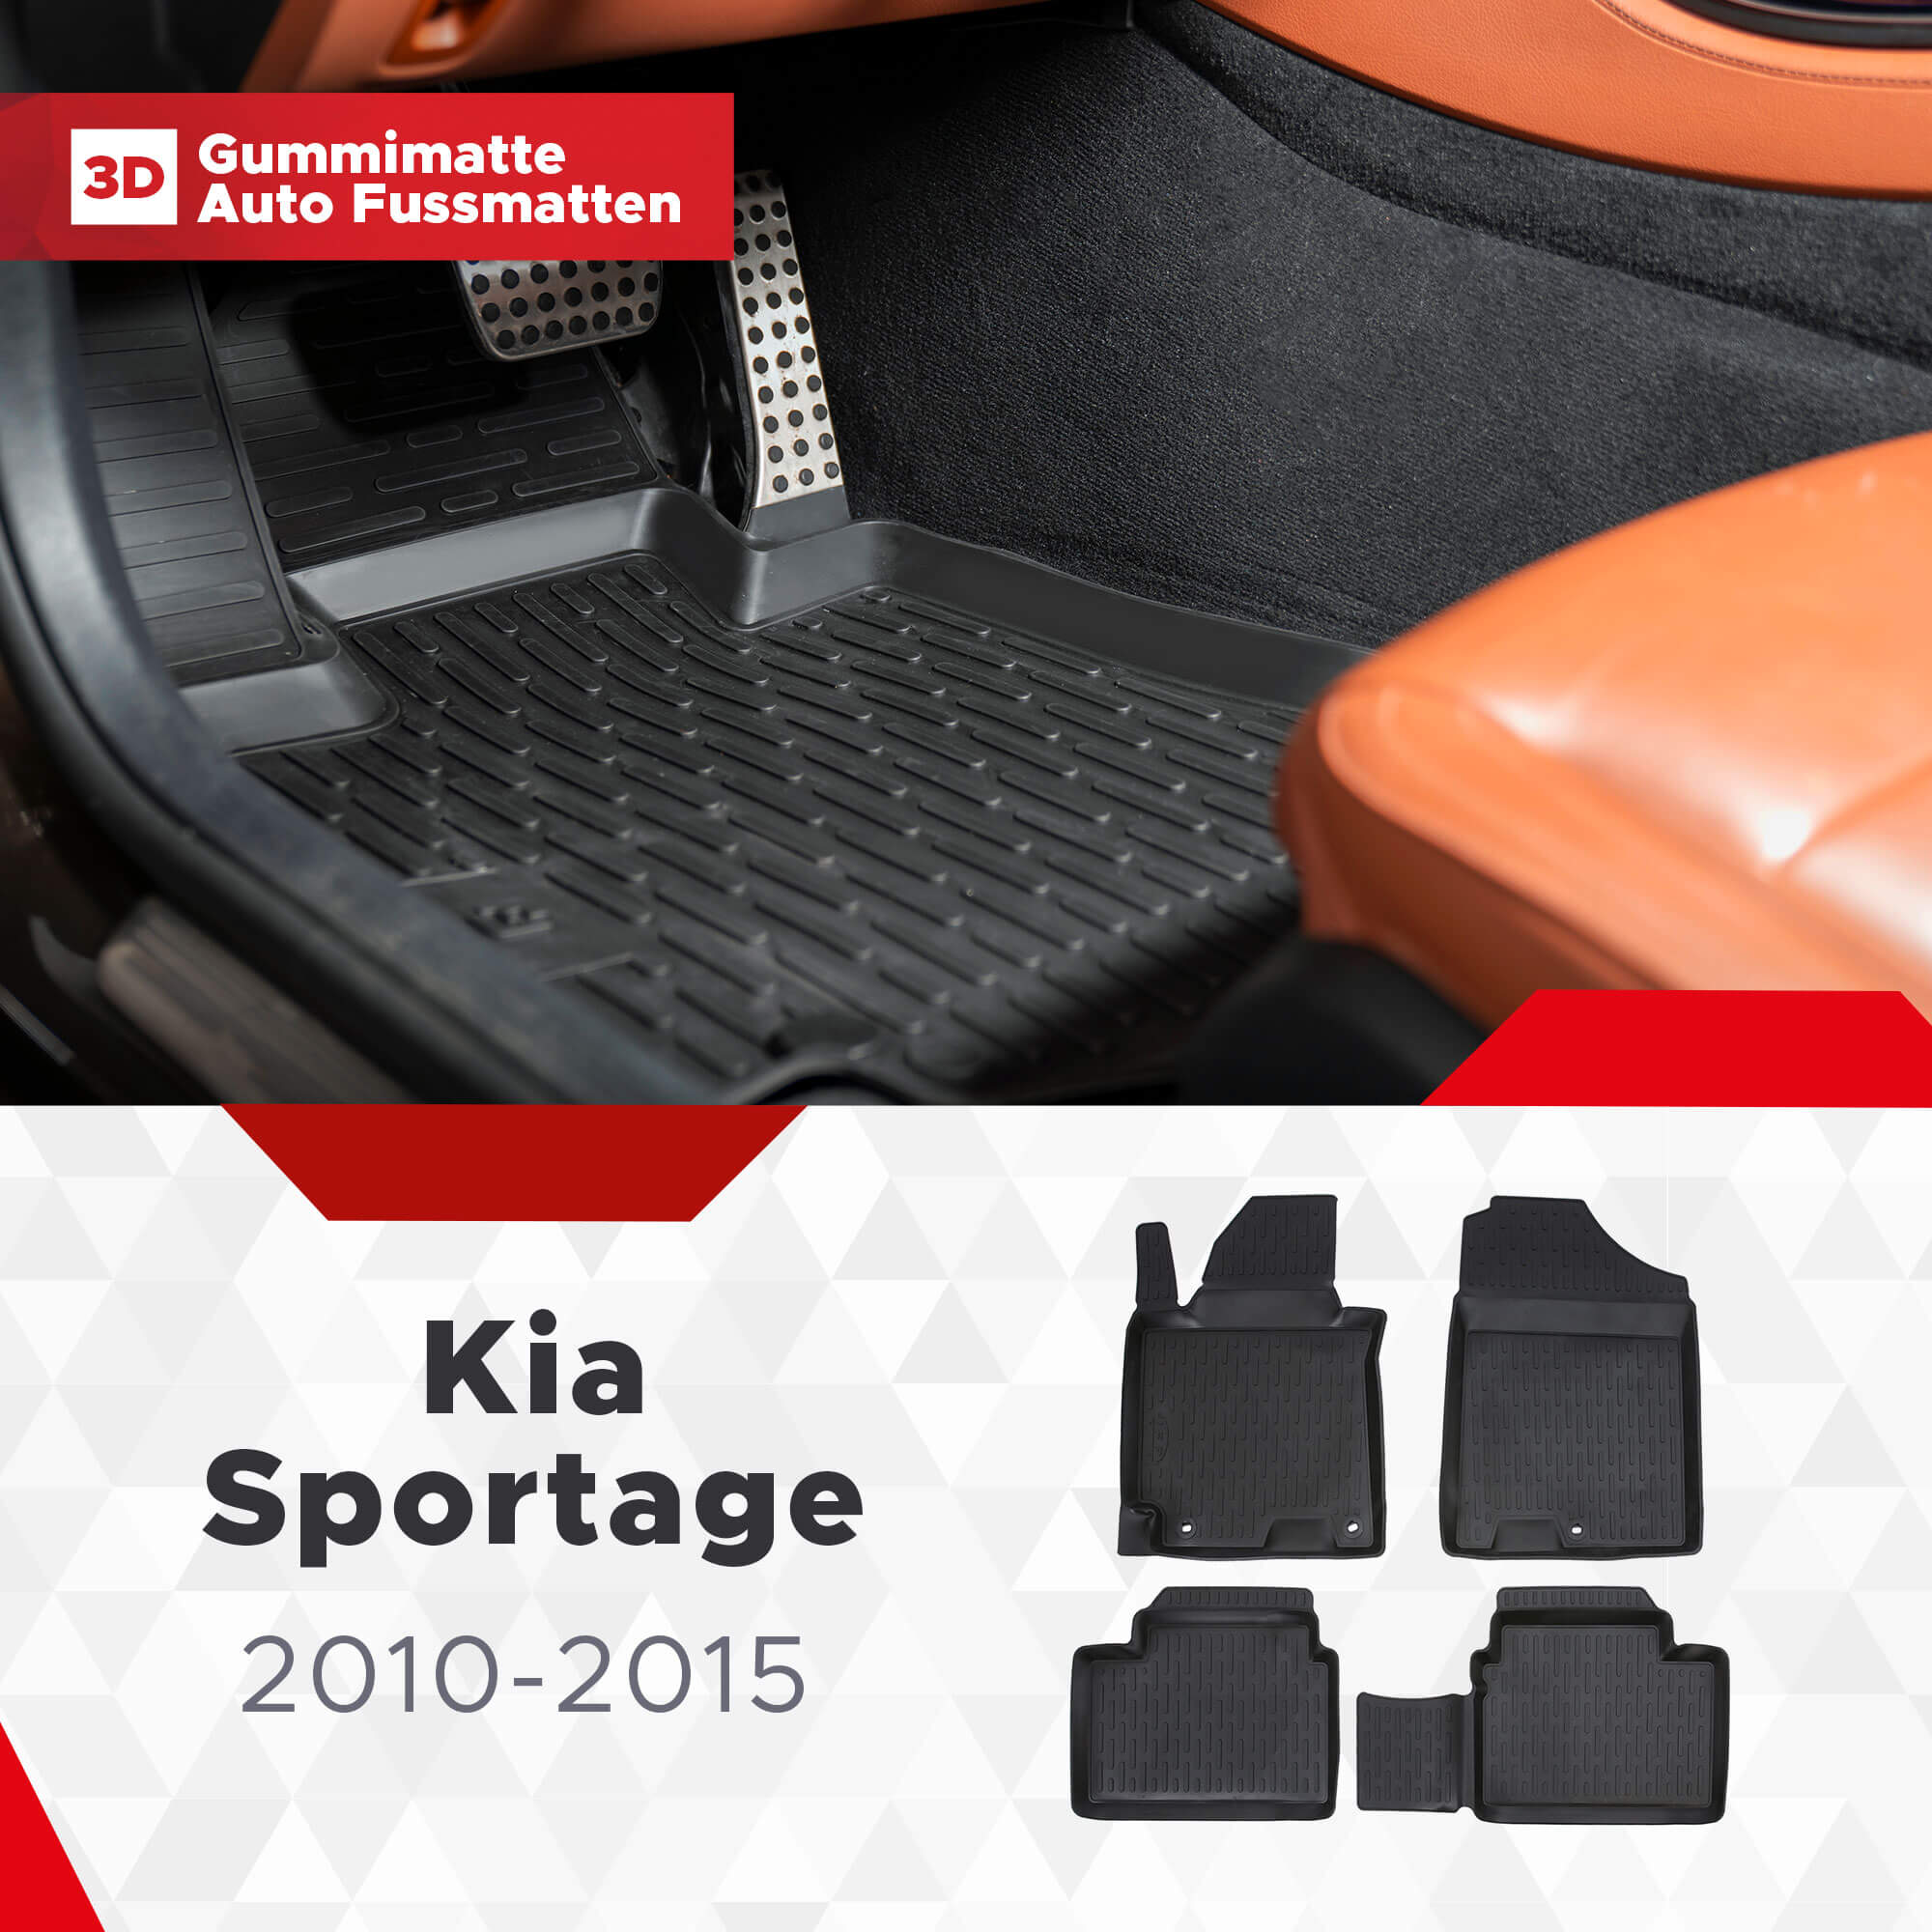 3D Fußmatten passend für Kia Sportage 2010-2015 exklusiv